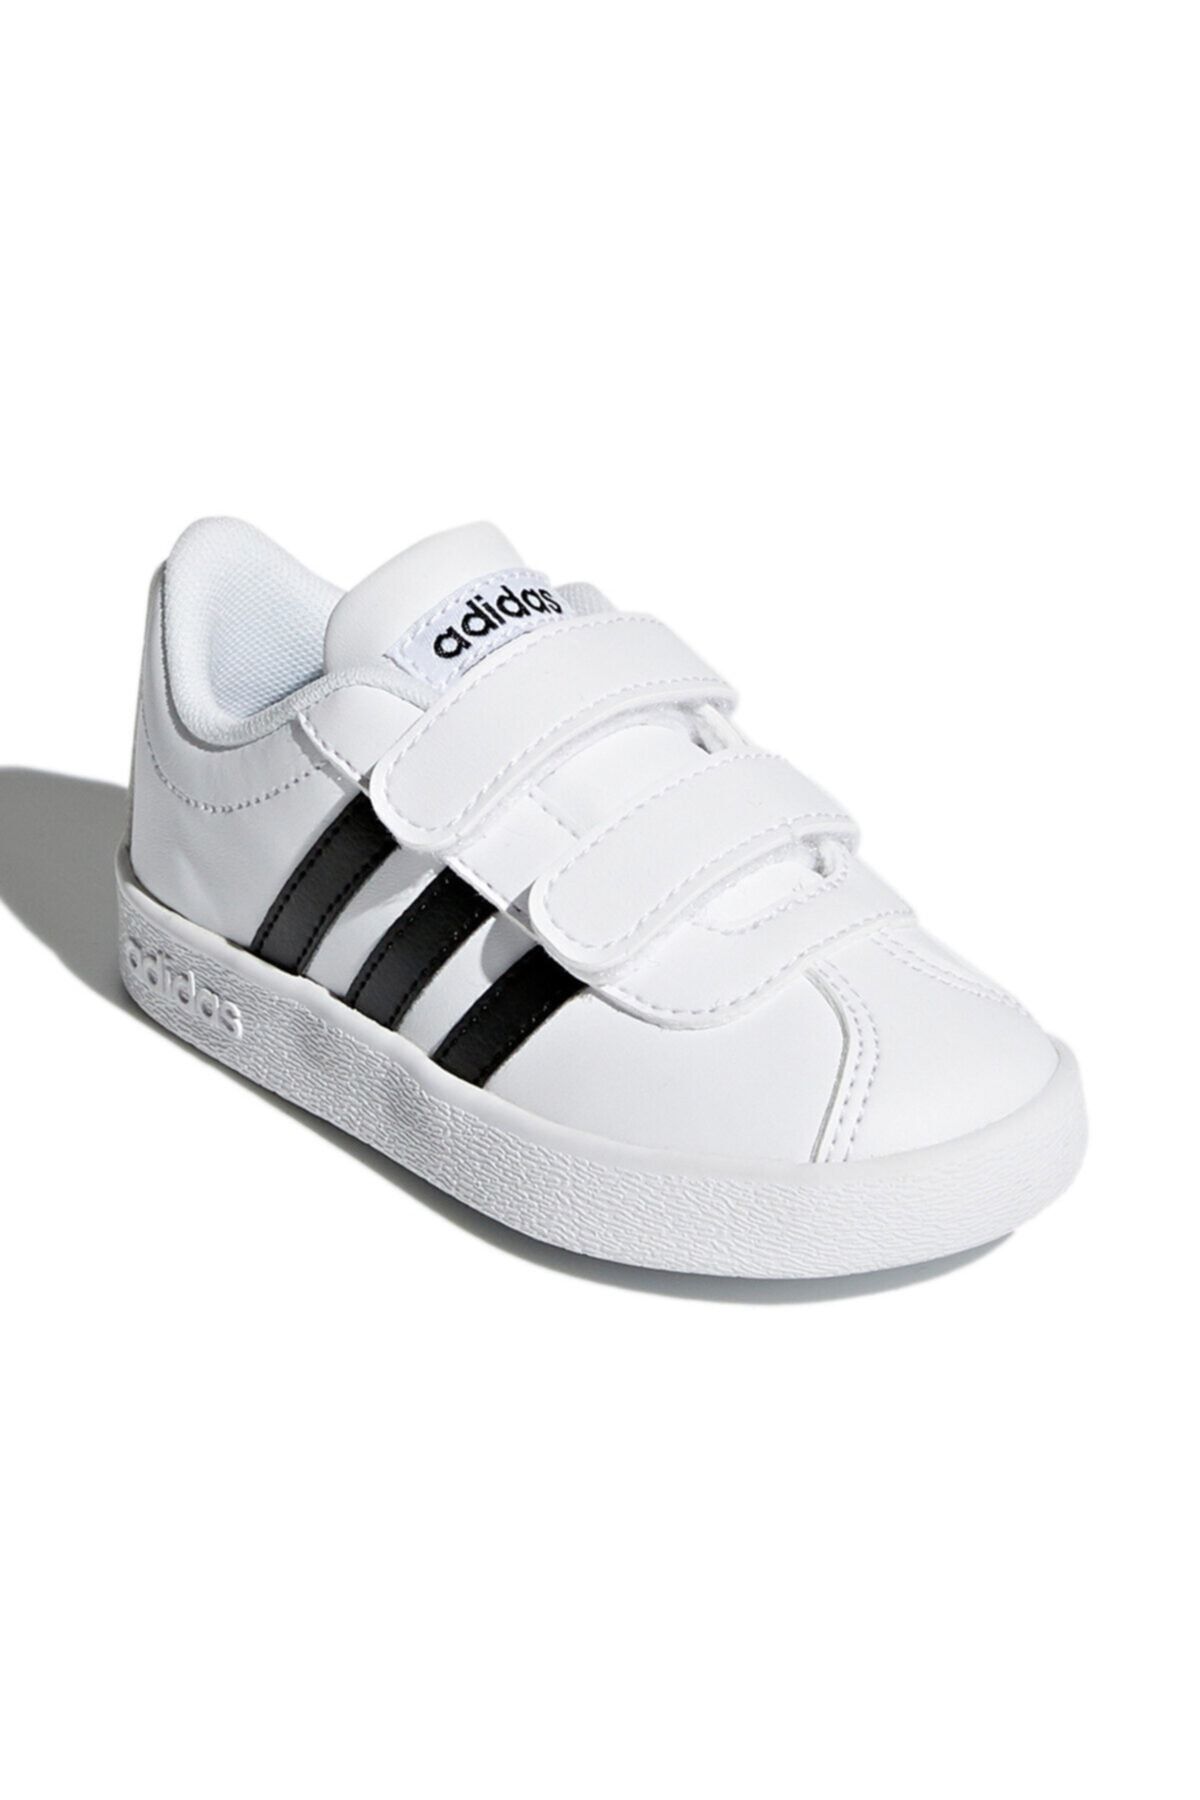 adidas VL COURT 2 CMF INF Beyaz Erkek Çocuk Sneaker Ayakkabı 100320407